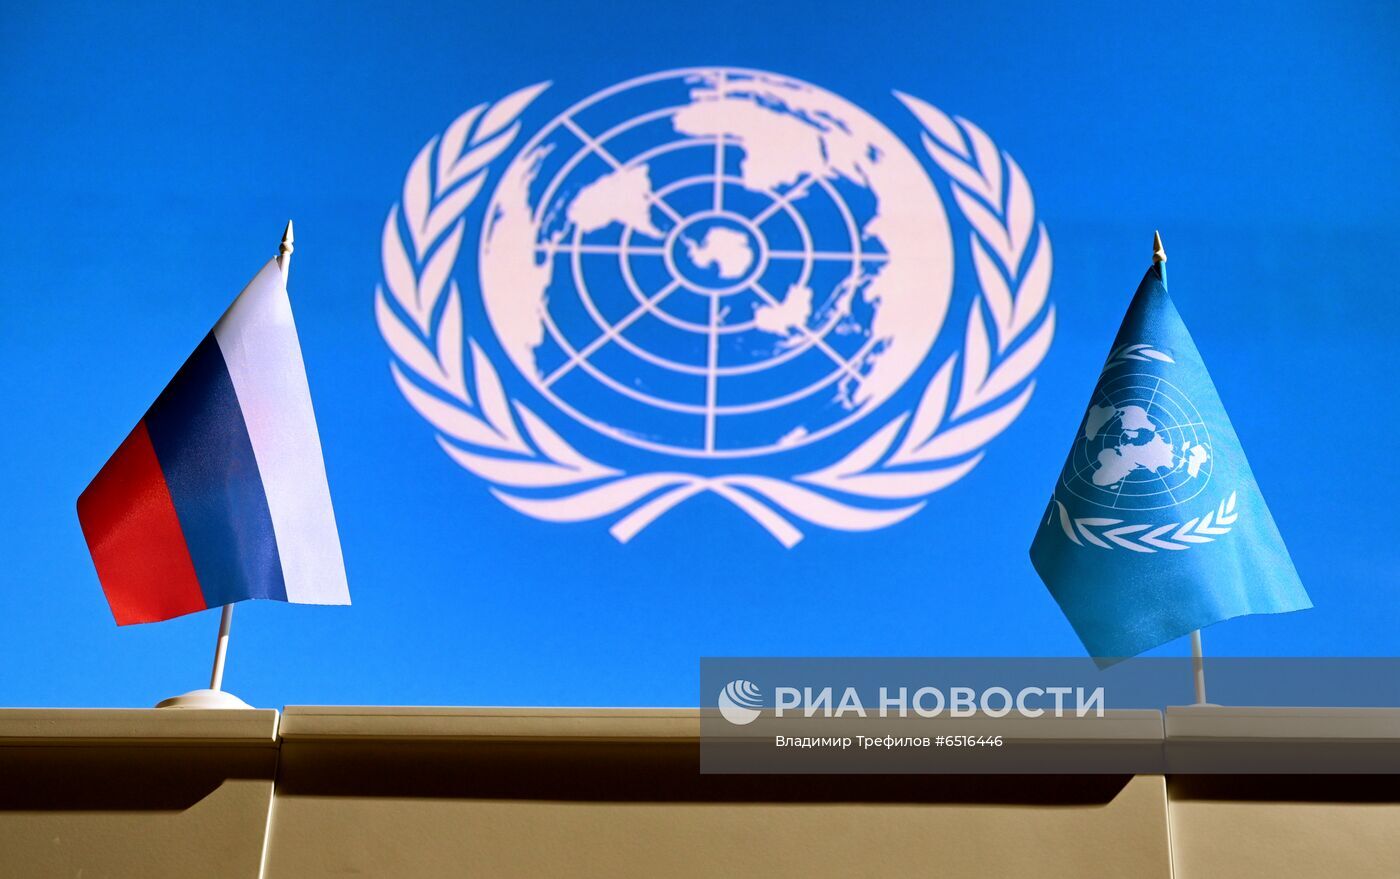 روسيا تنتقد ازدواجية معايير الأمم المتحدة في التعامل مع قضيتي فلسطين وأوكرانيا